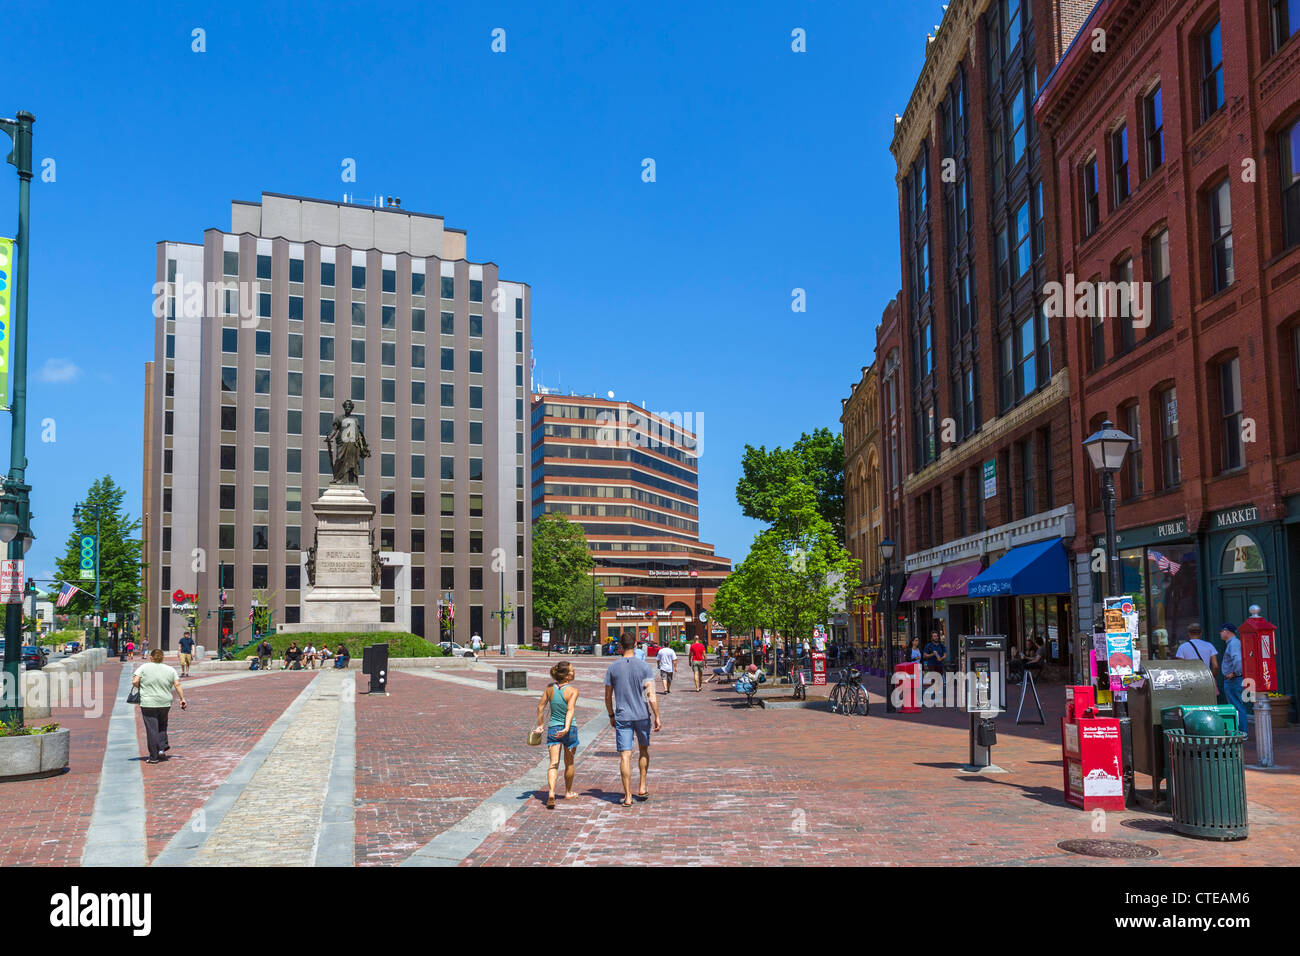 Monument Square de Congress Street dans le centre-ville de Portland, Maine, USA Banque D'Images